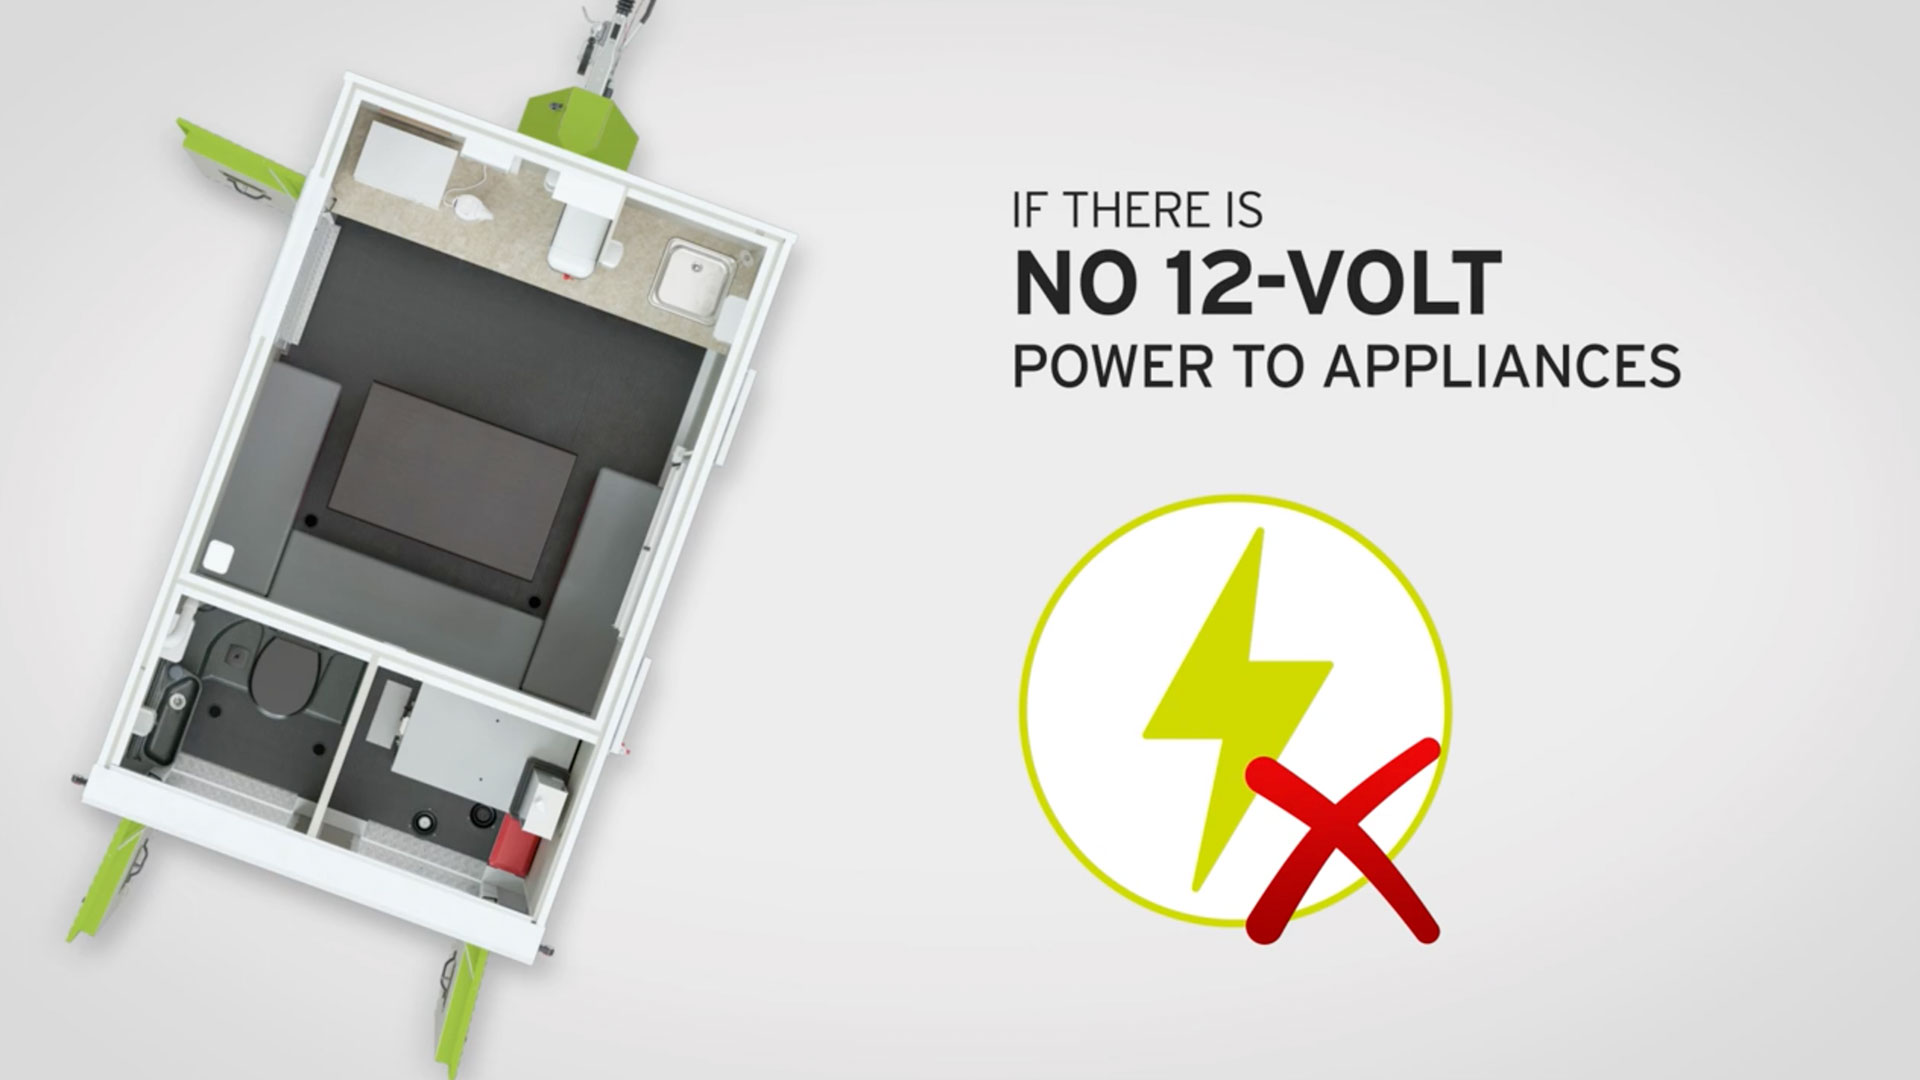 No 12-Volt power to appliances